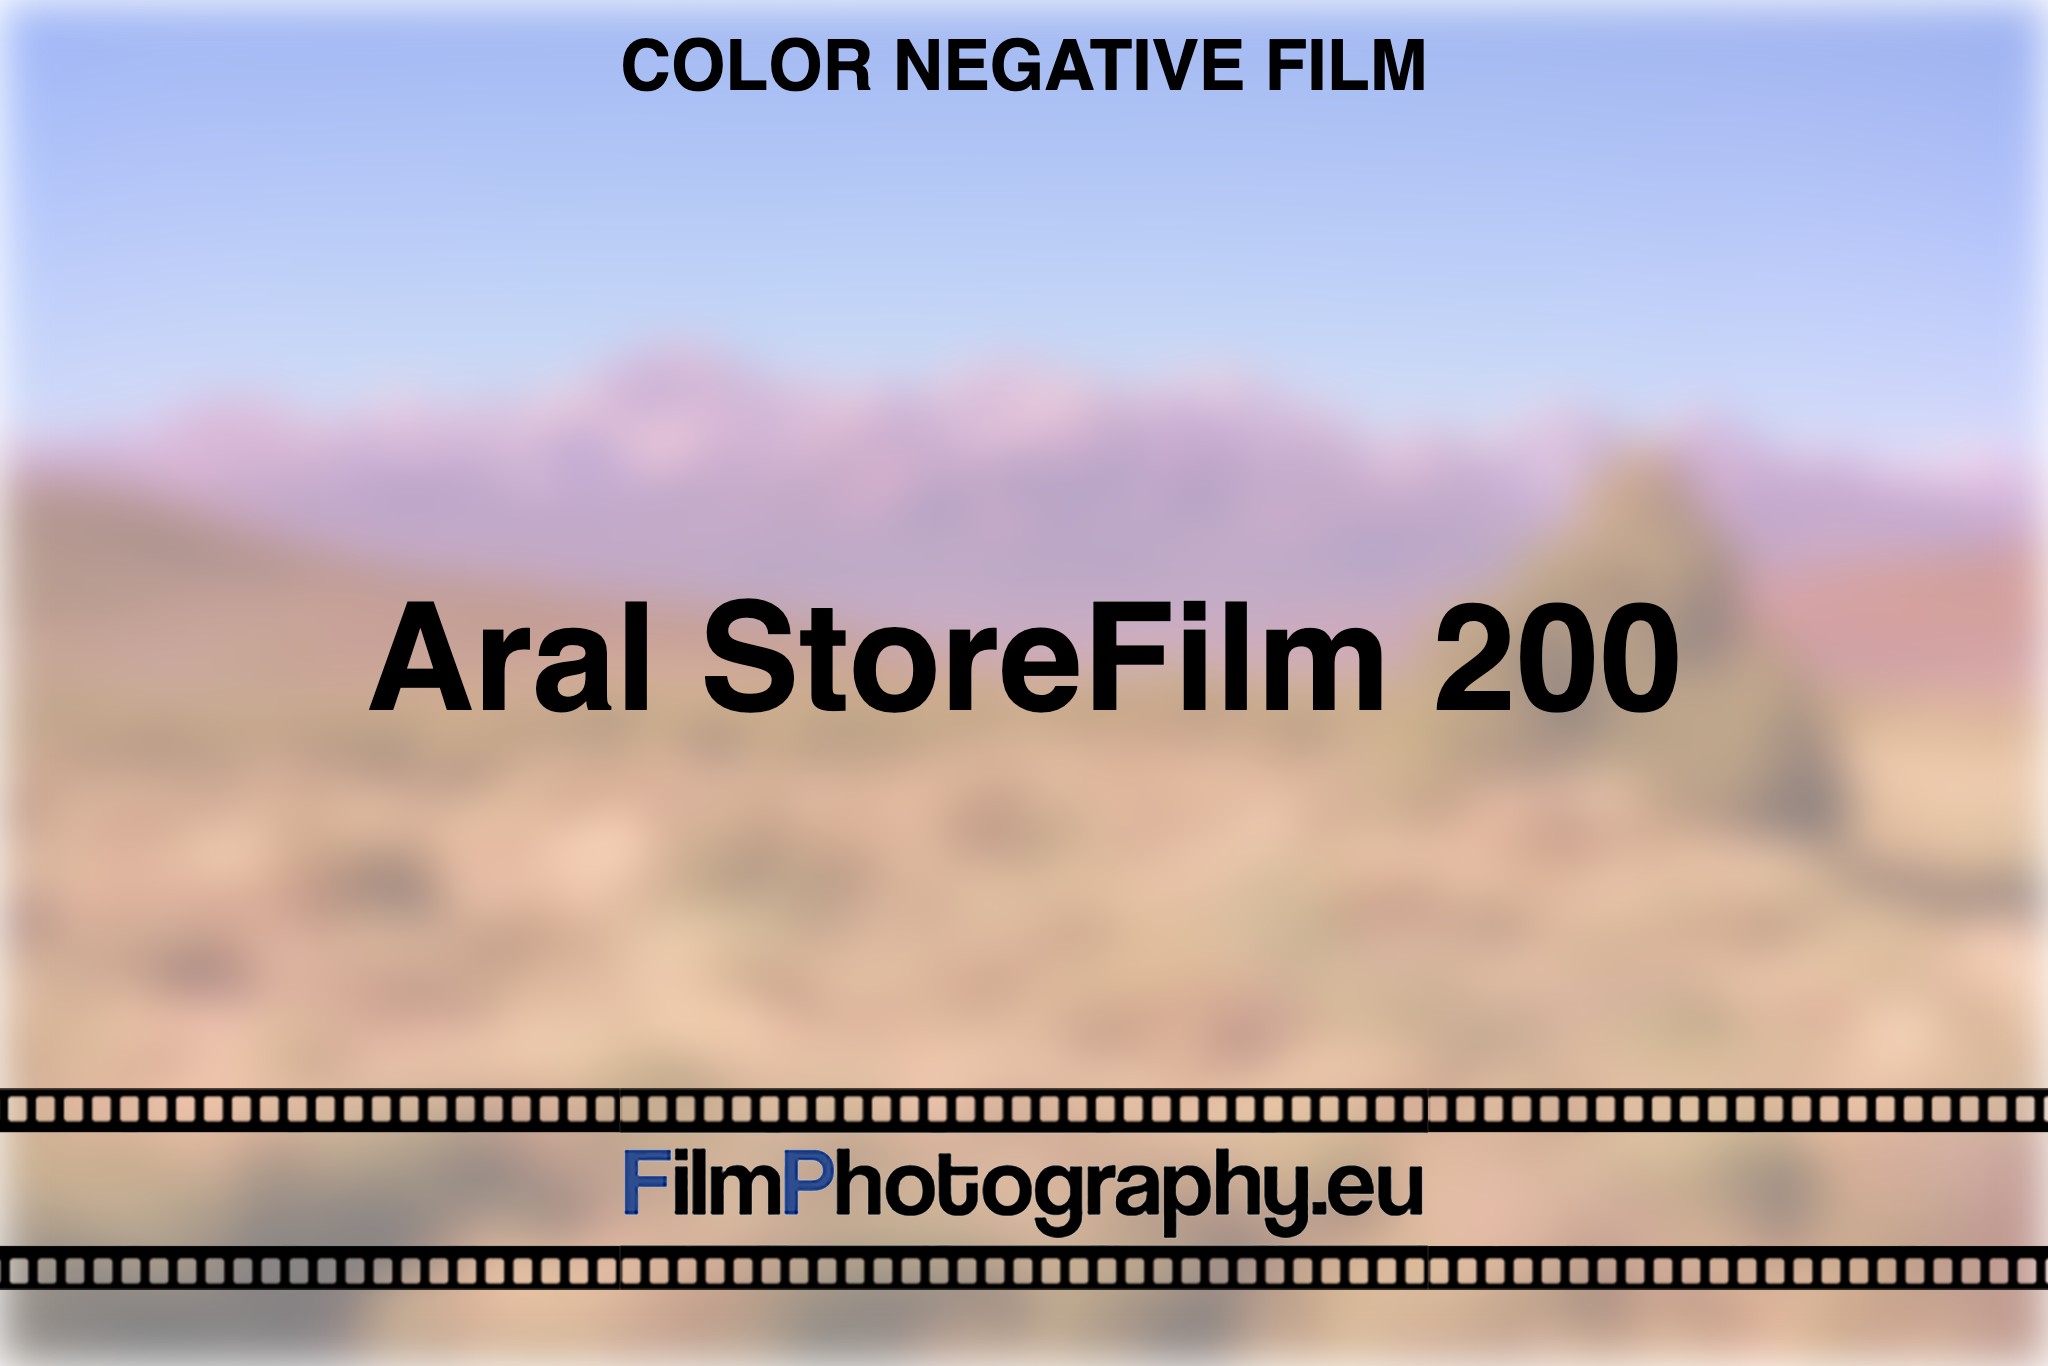 aral-storefilm-200-color-negative-film-bnv